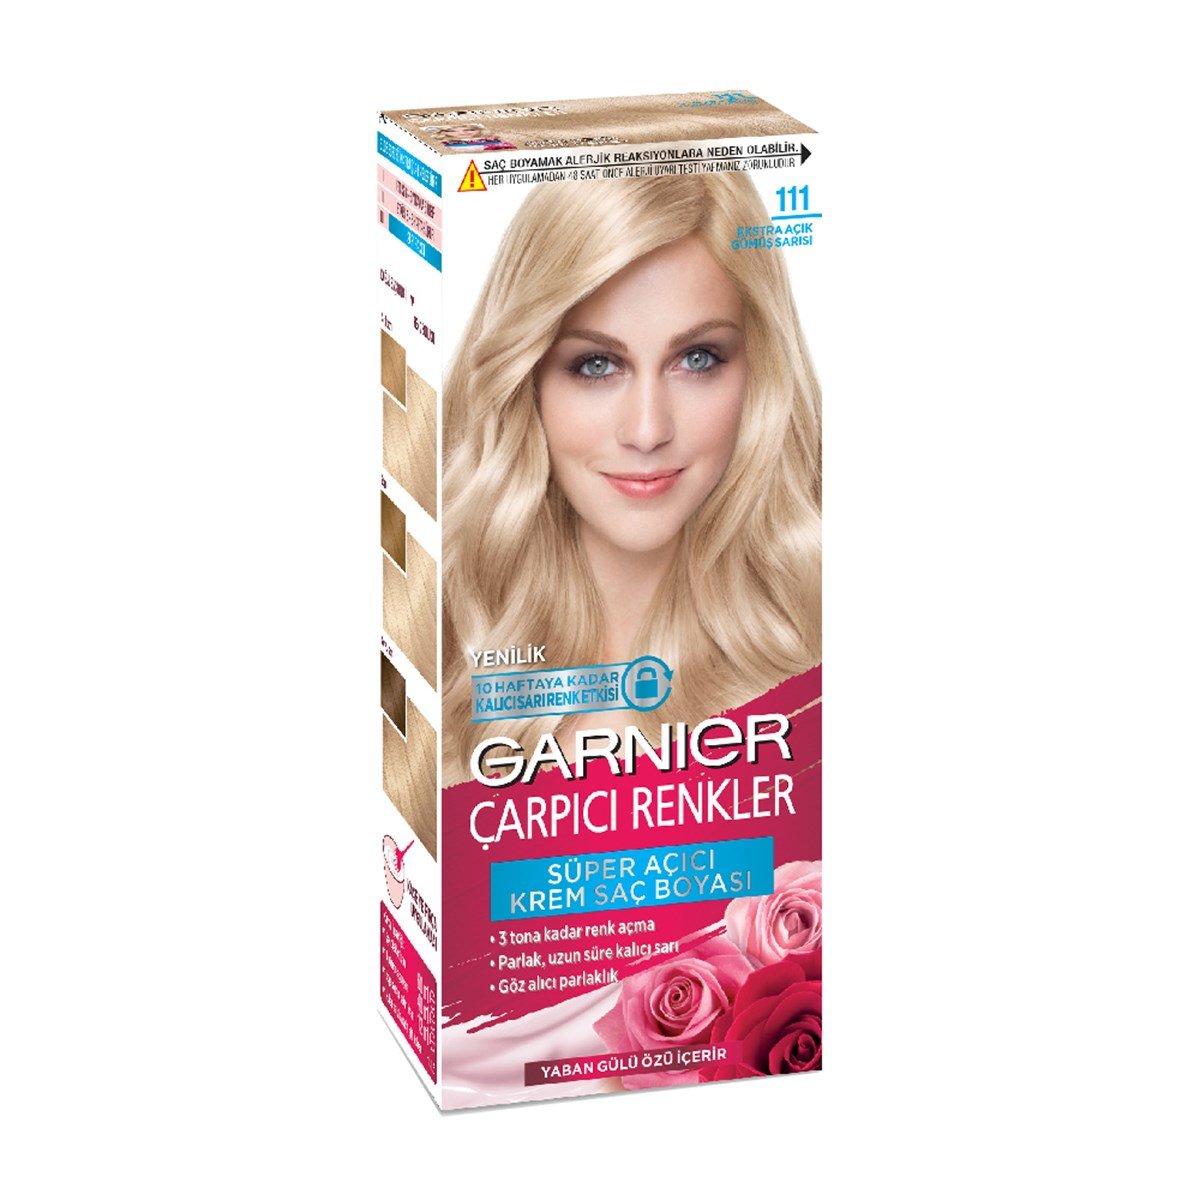 Garnier Çarpıcı Renkler Yoğun Kalıcı Krem Saç Boyası Extra Açık Gümüş Sarısı  111 - Platin